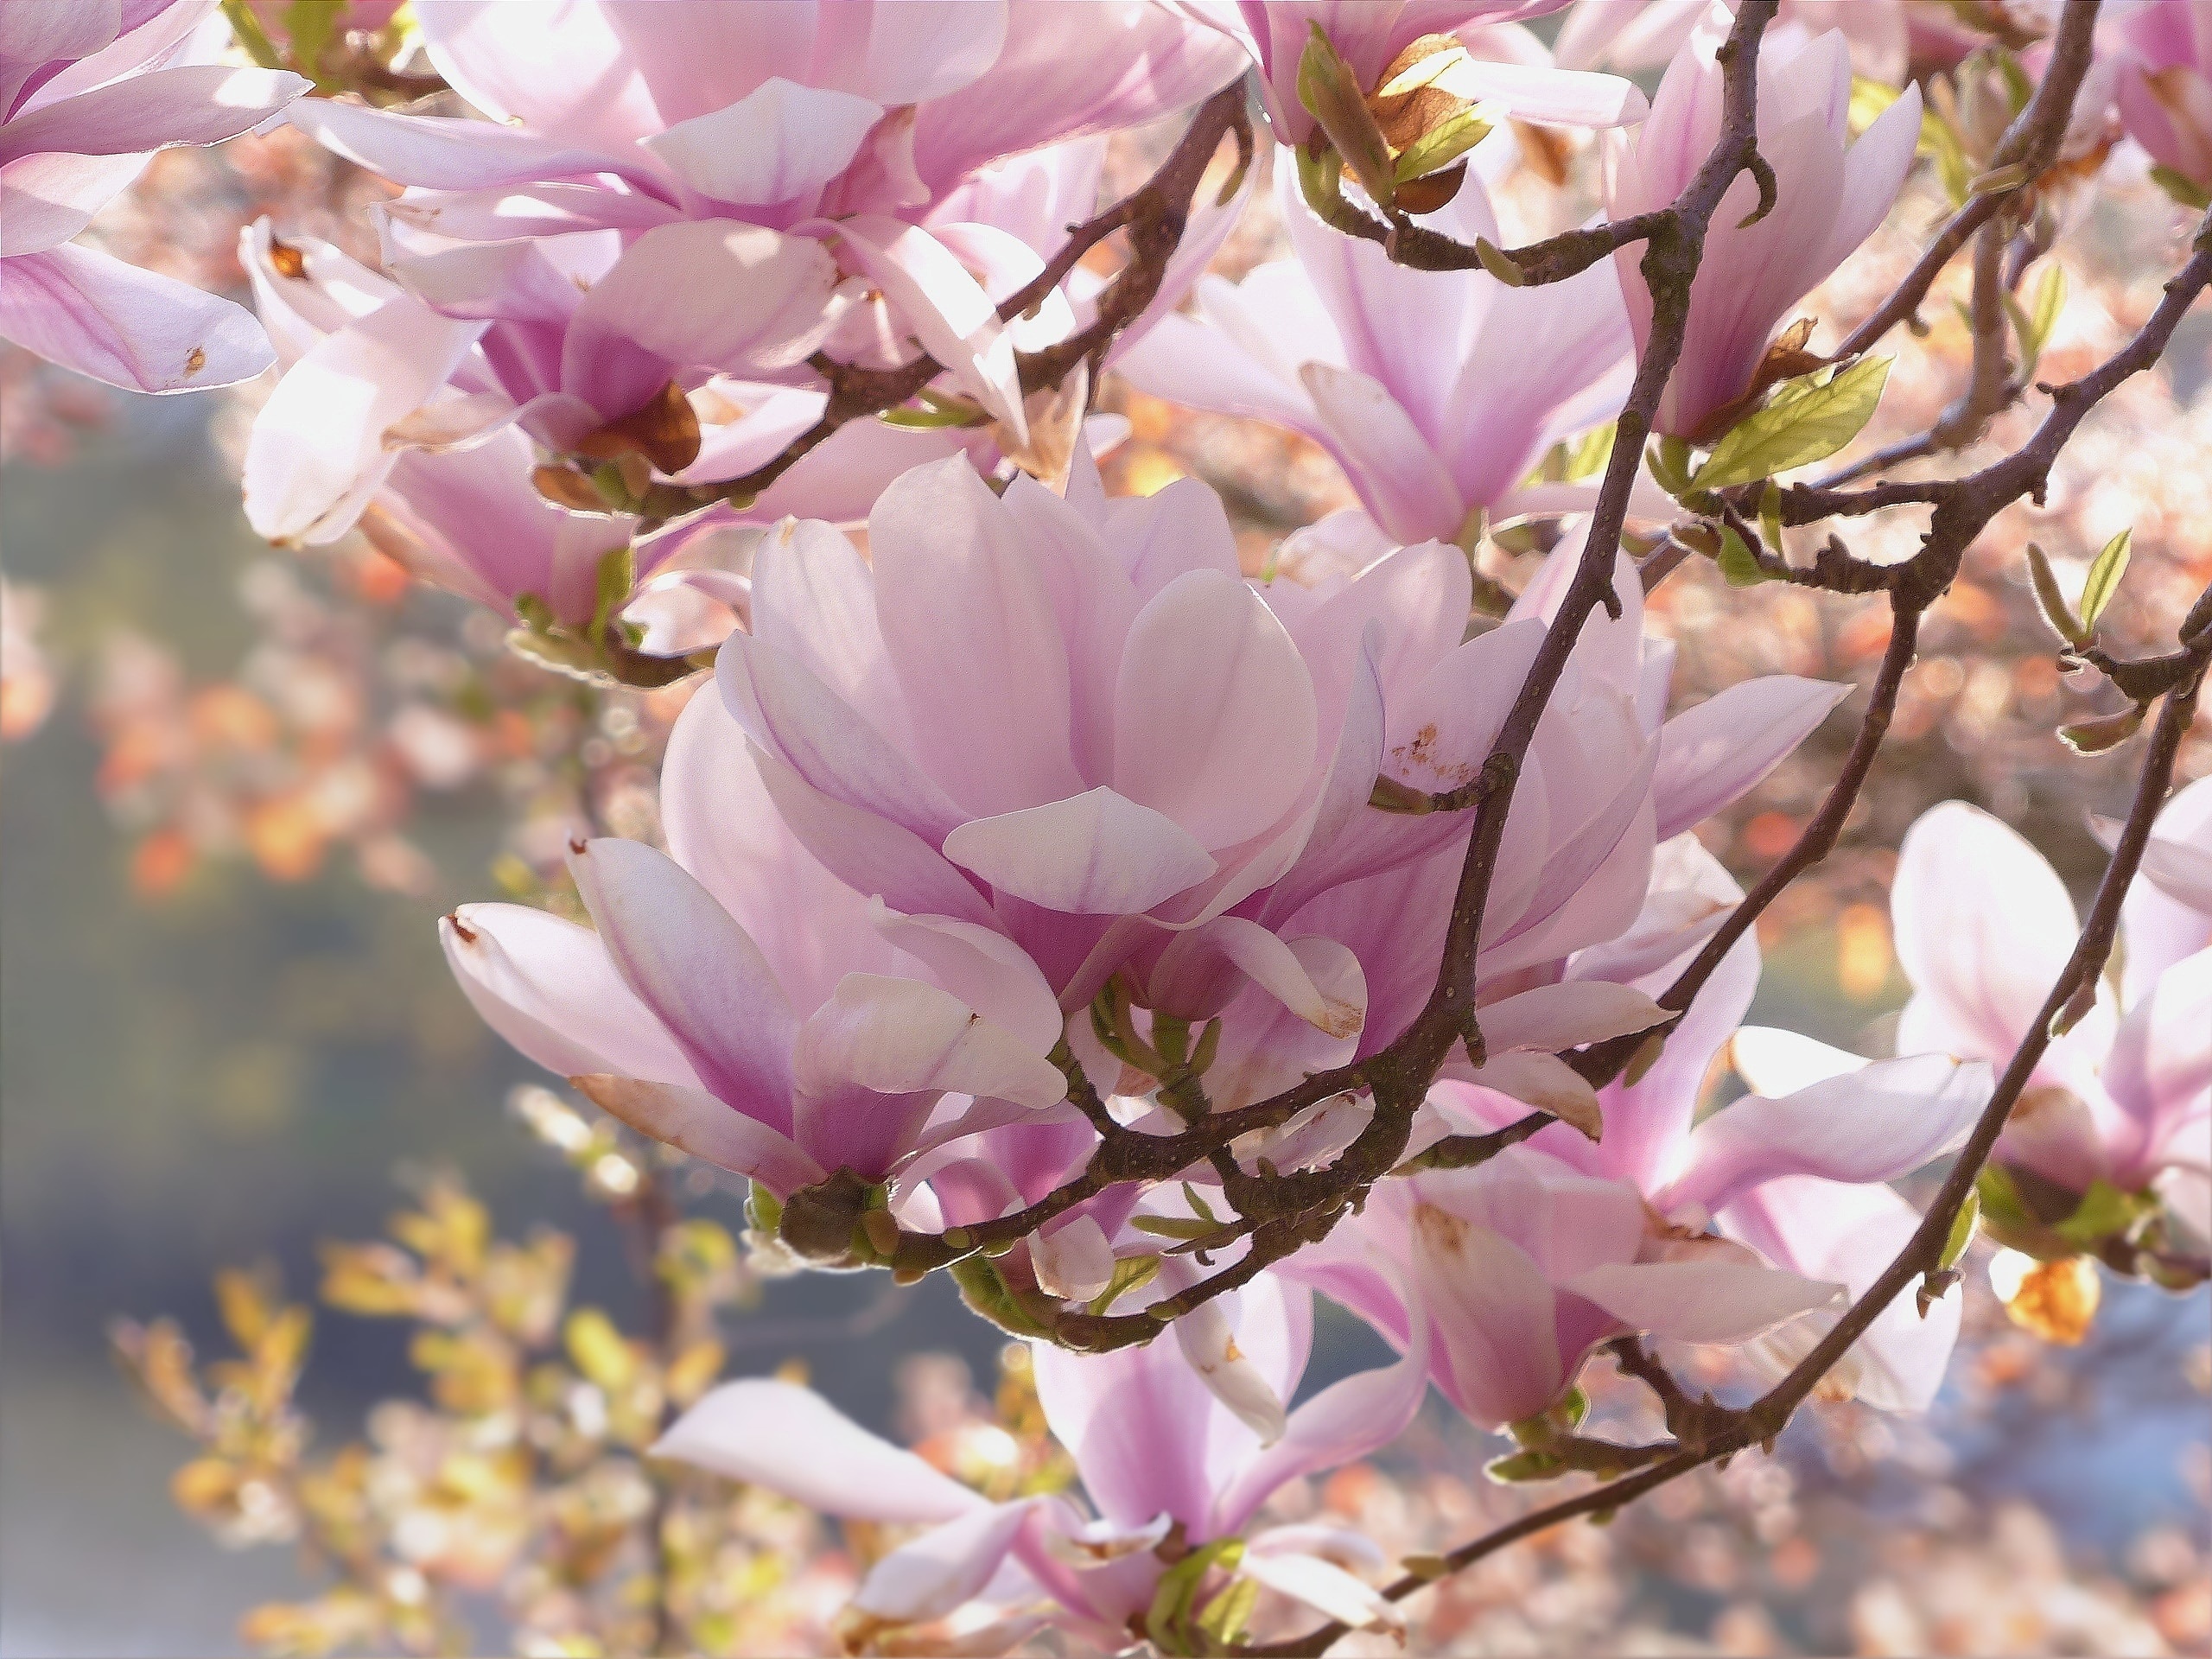 Royalty-free images, Flowering magnolia tree, Striking visuals, Peakpx, 2560x1920 HD Desktop